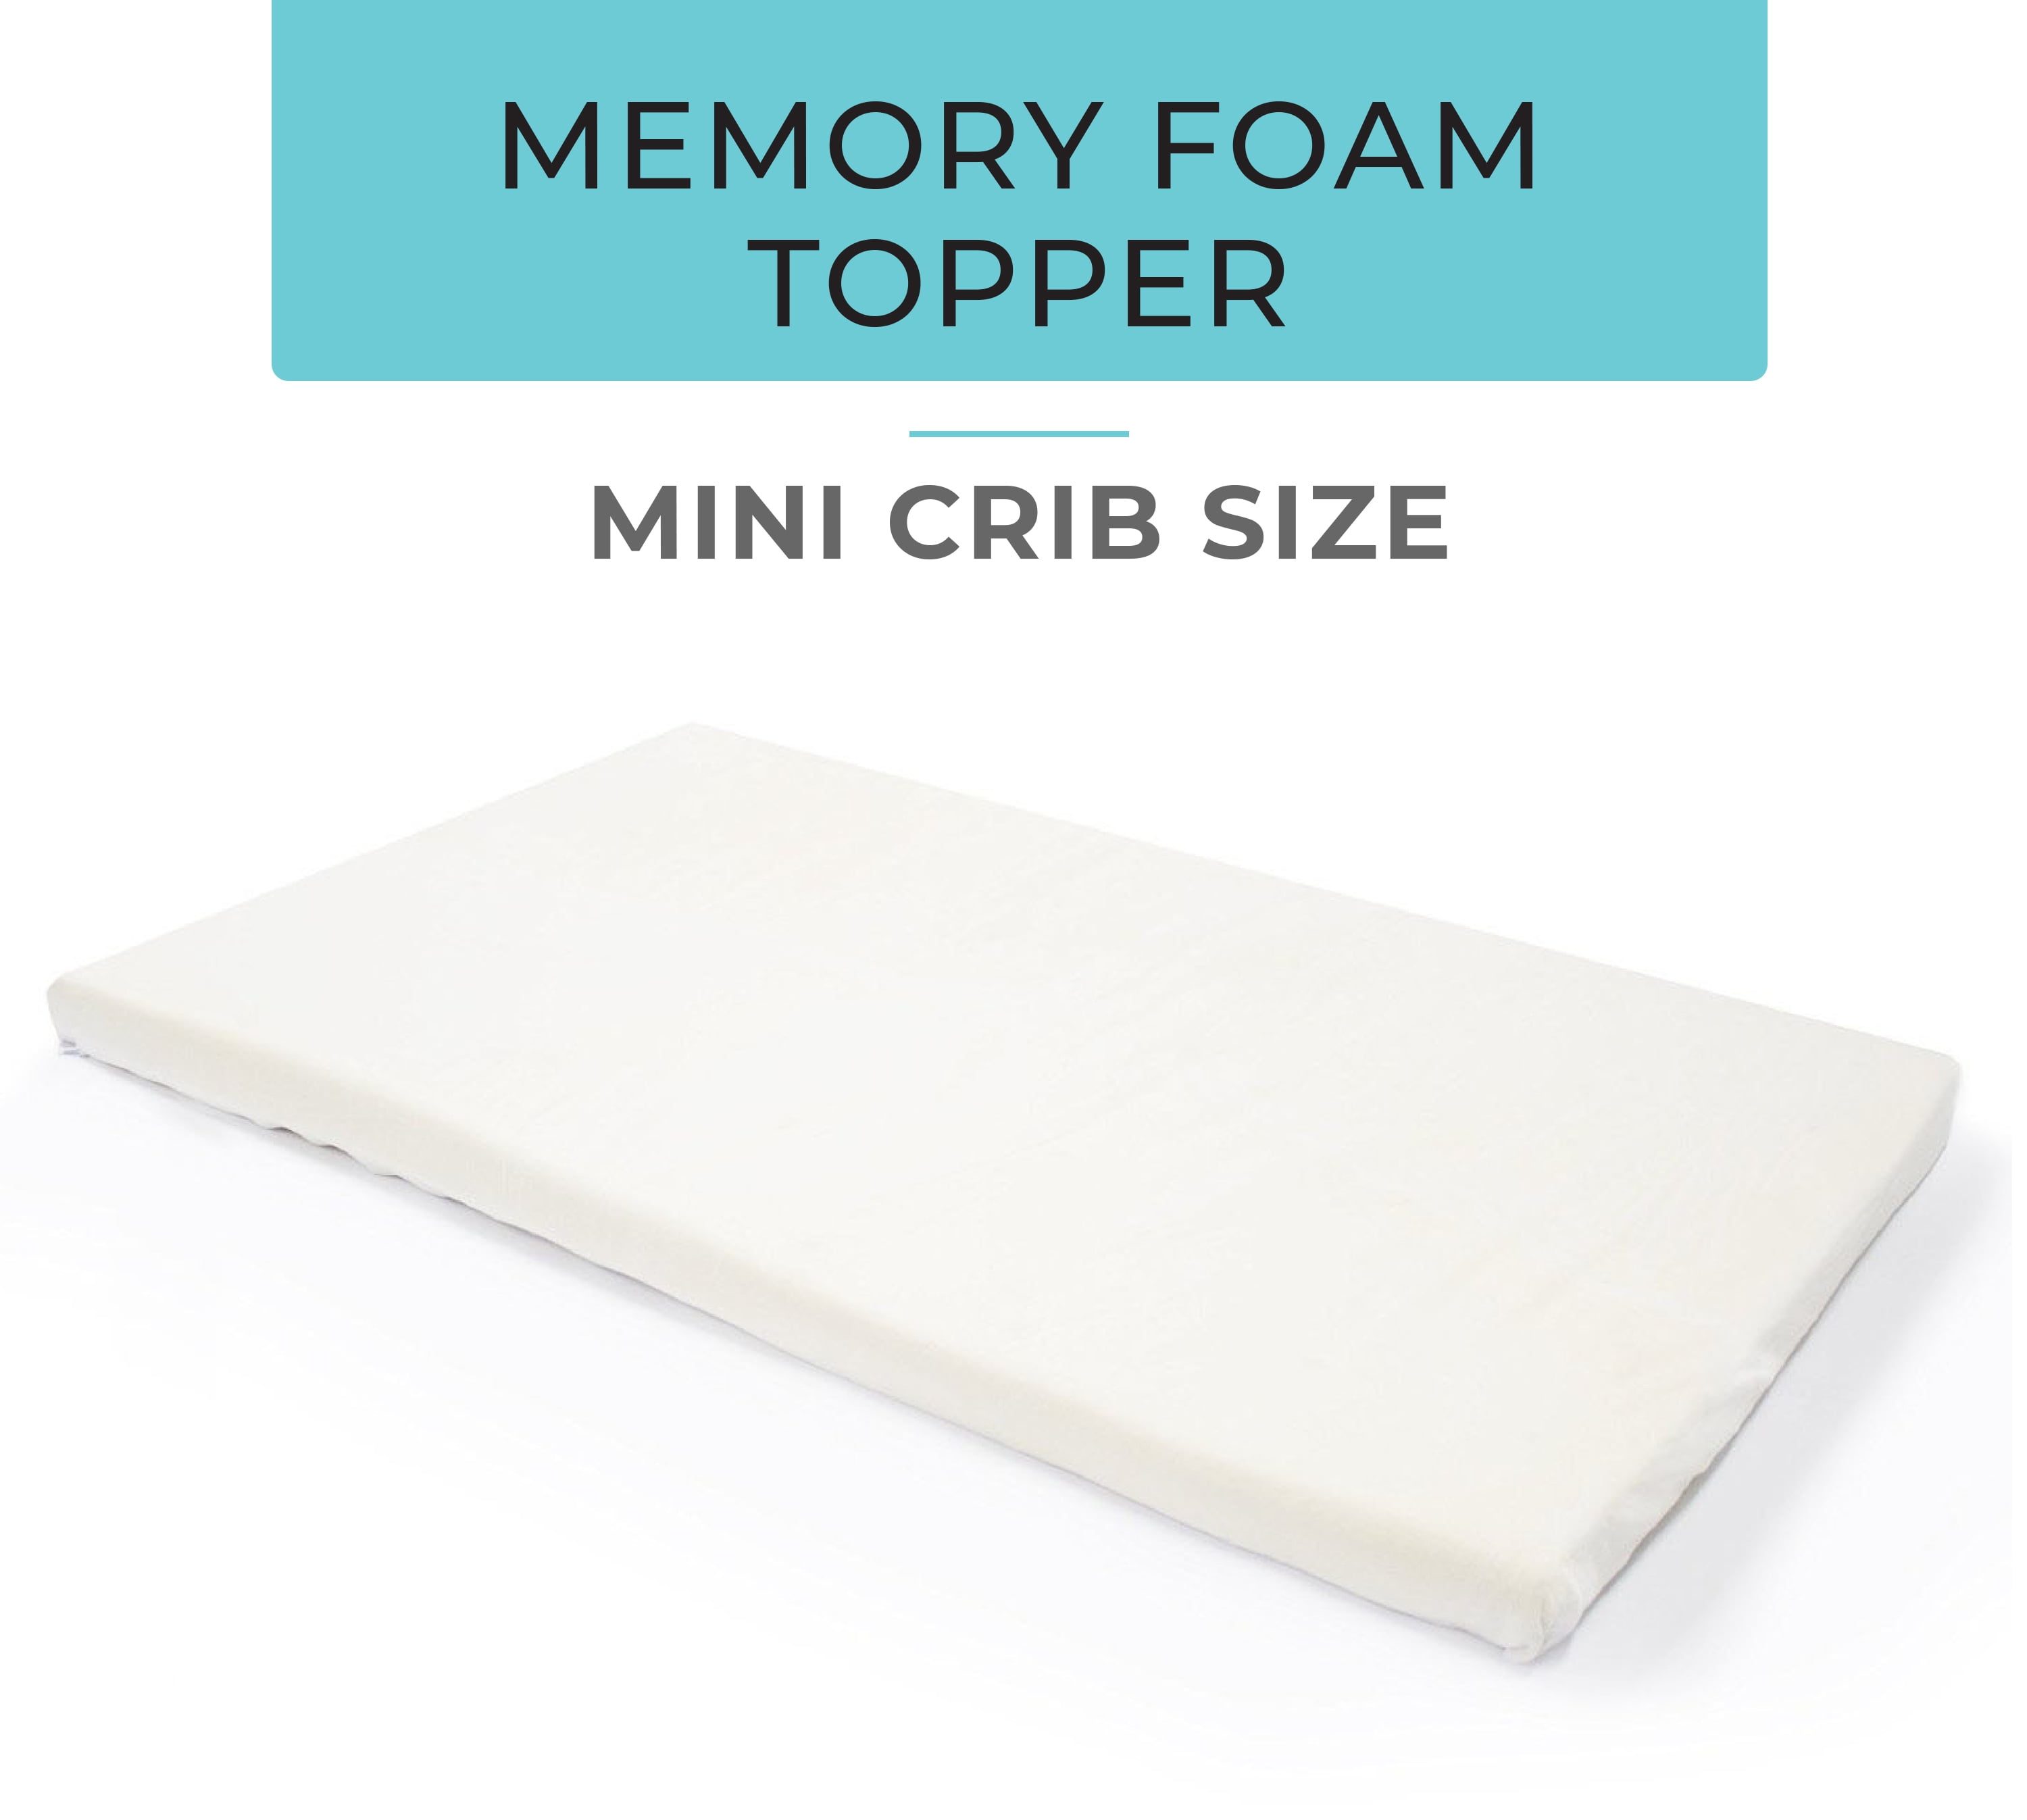 Milliard Mini-Crib Memory Foam Mattress 